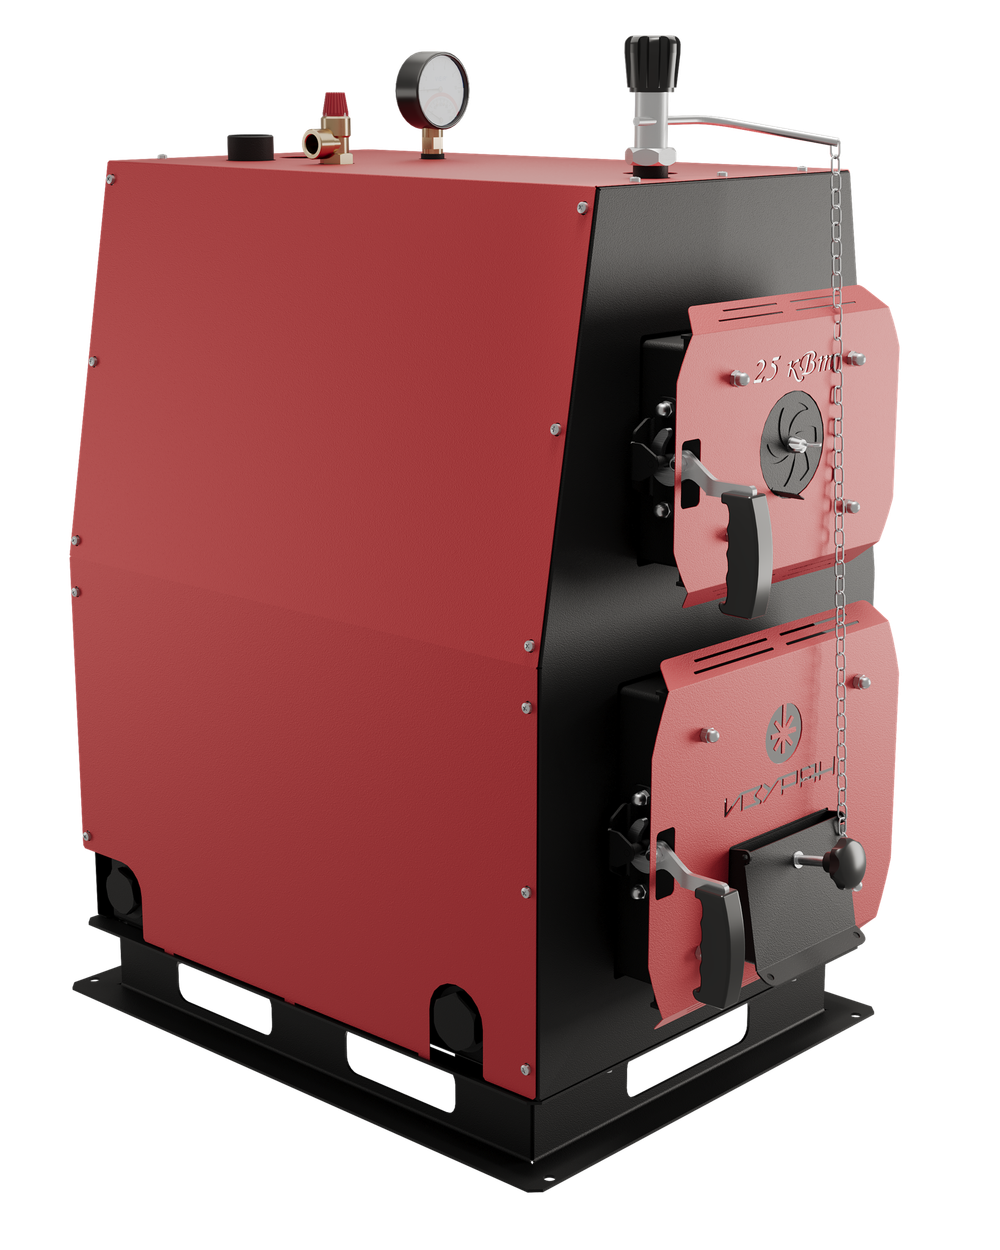 Твердотопливный котел длительного горения Изуран-12 в кожухе на 12 кВт. Отапливаемое помещение до 324 куб.м. Производитель - Изуран